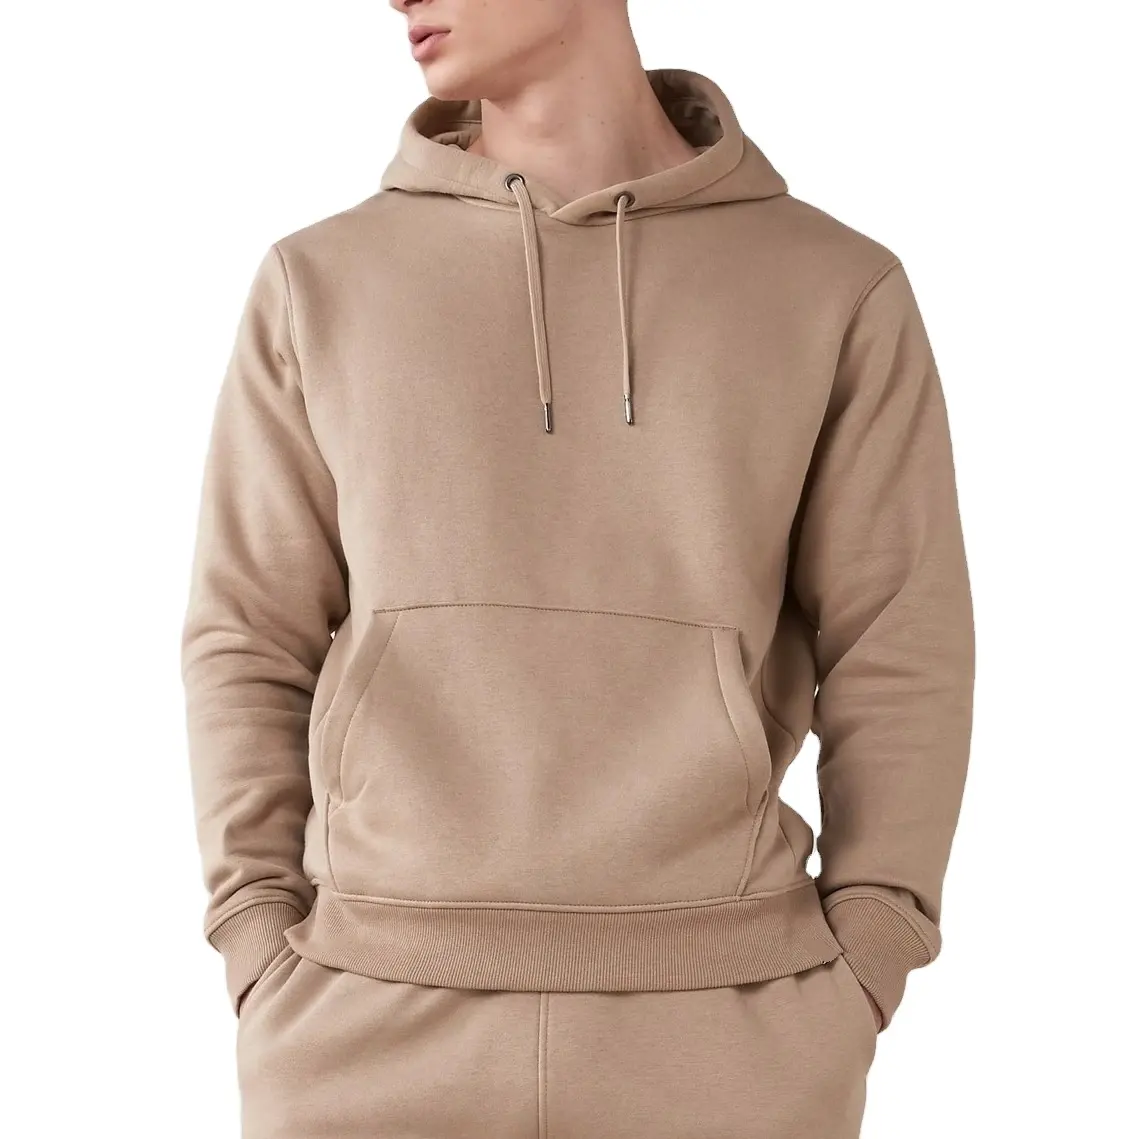 Großhandel Herren bekleidung Fleece Sweater Mode Herren Hoodies & Sweatshirts Baumwolle Custom High Quality Logo Pullover Hoodies